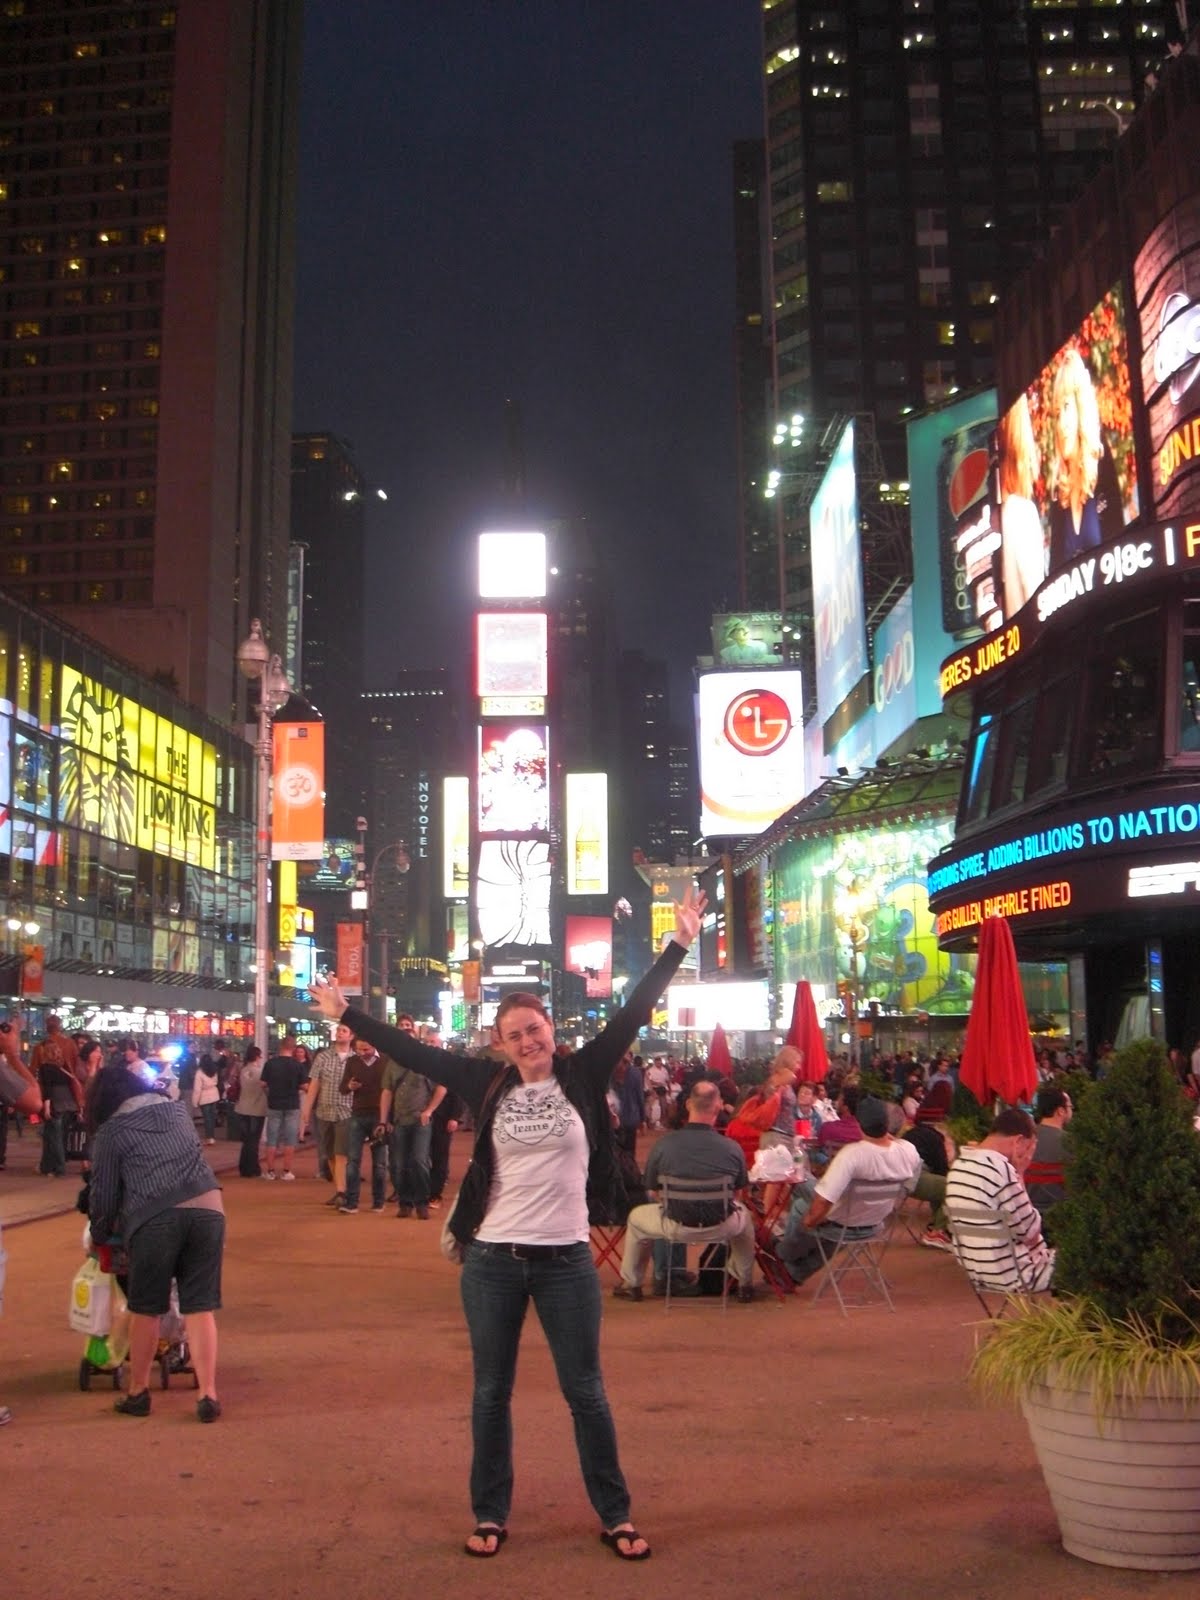 Sonja unterwegs in der Welt: Übers Wochenende nach New York City